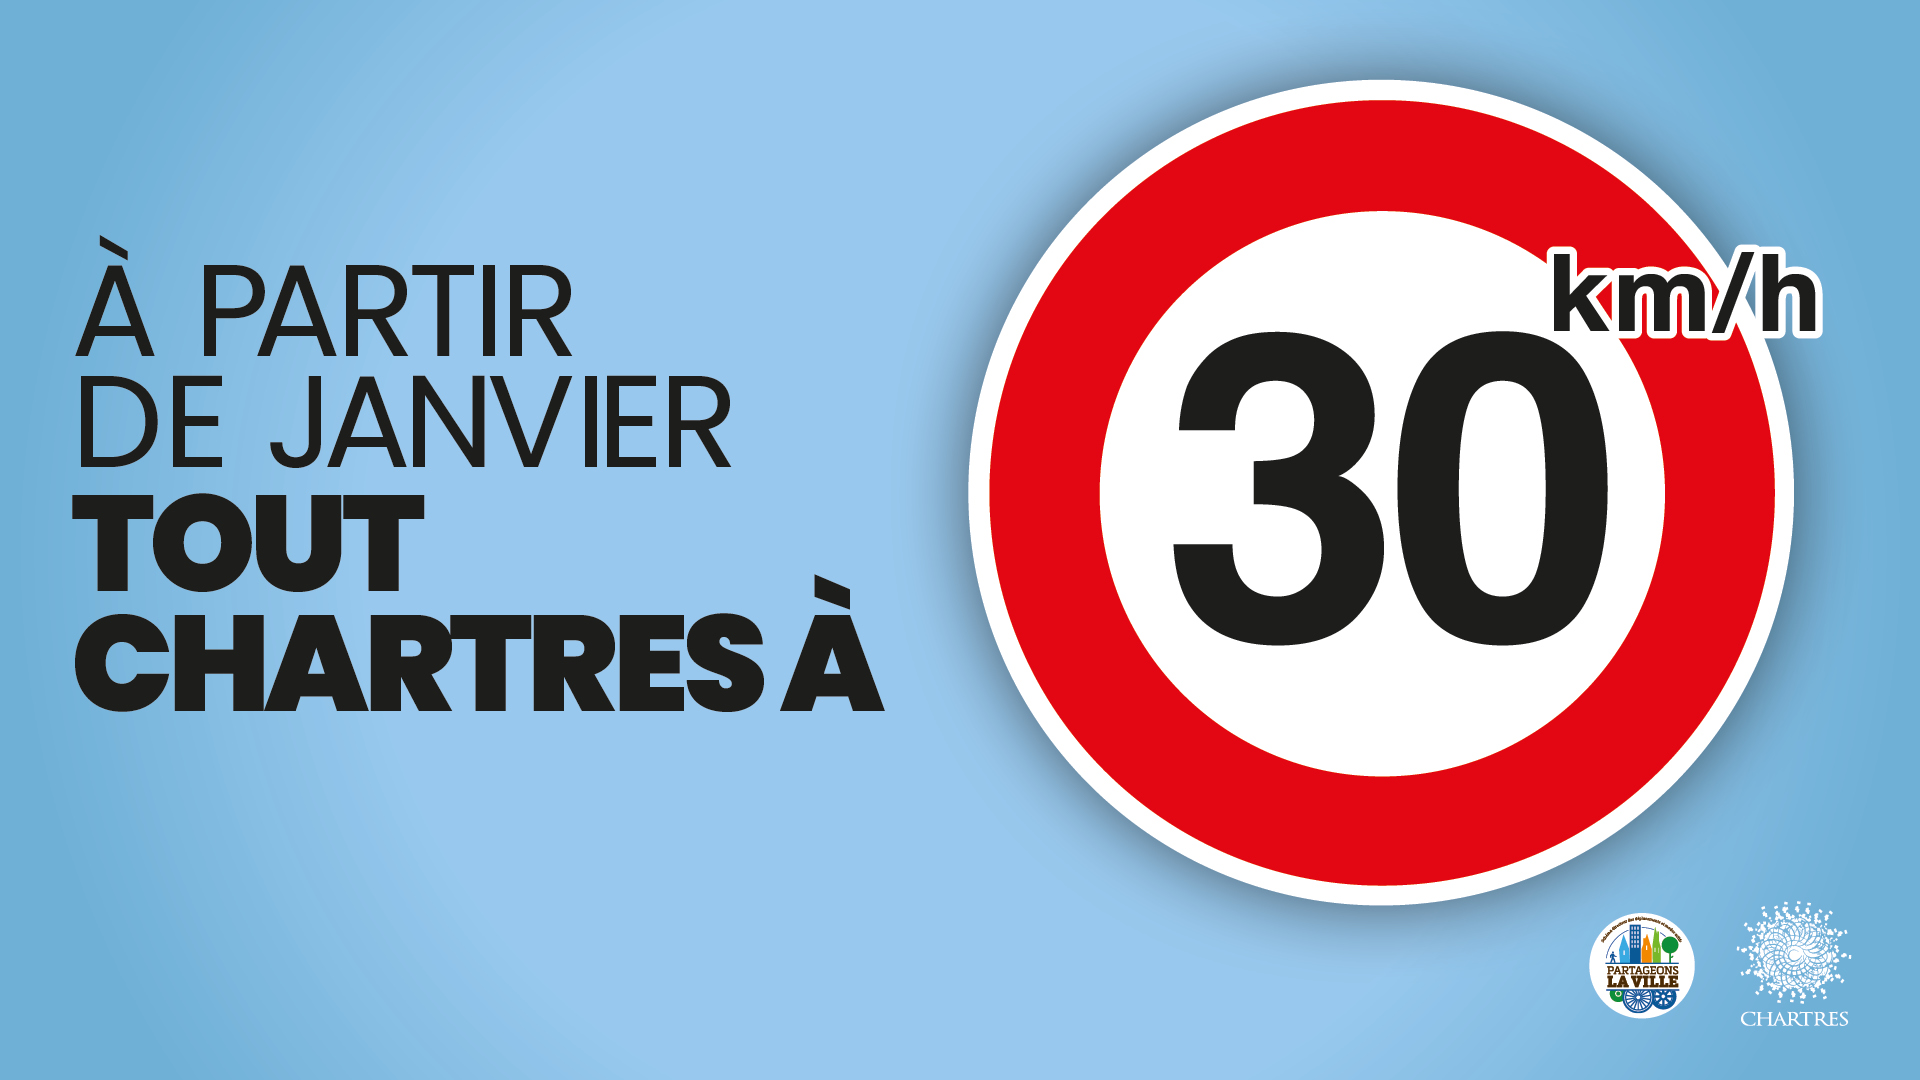 Tout Chartres à 30 km/h à partir du 4 janvier 2021 – Ville de Chartres